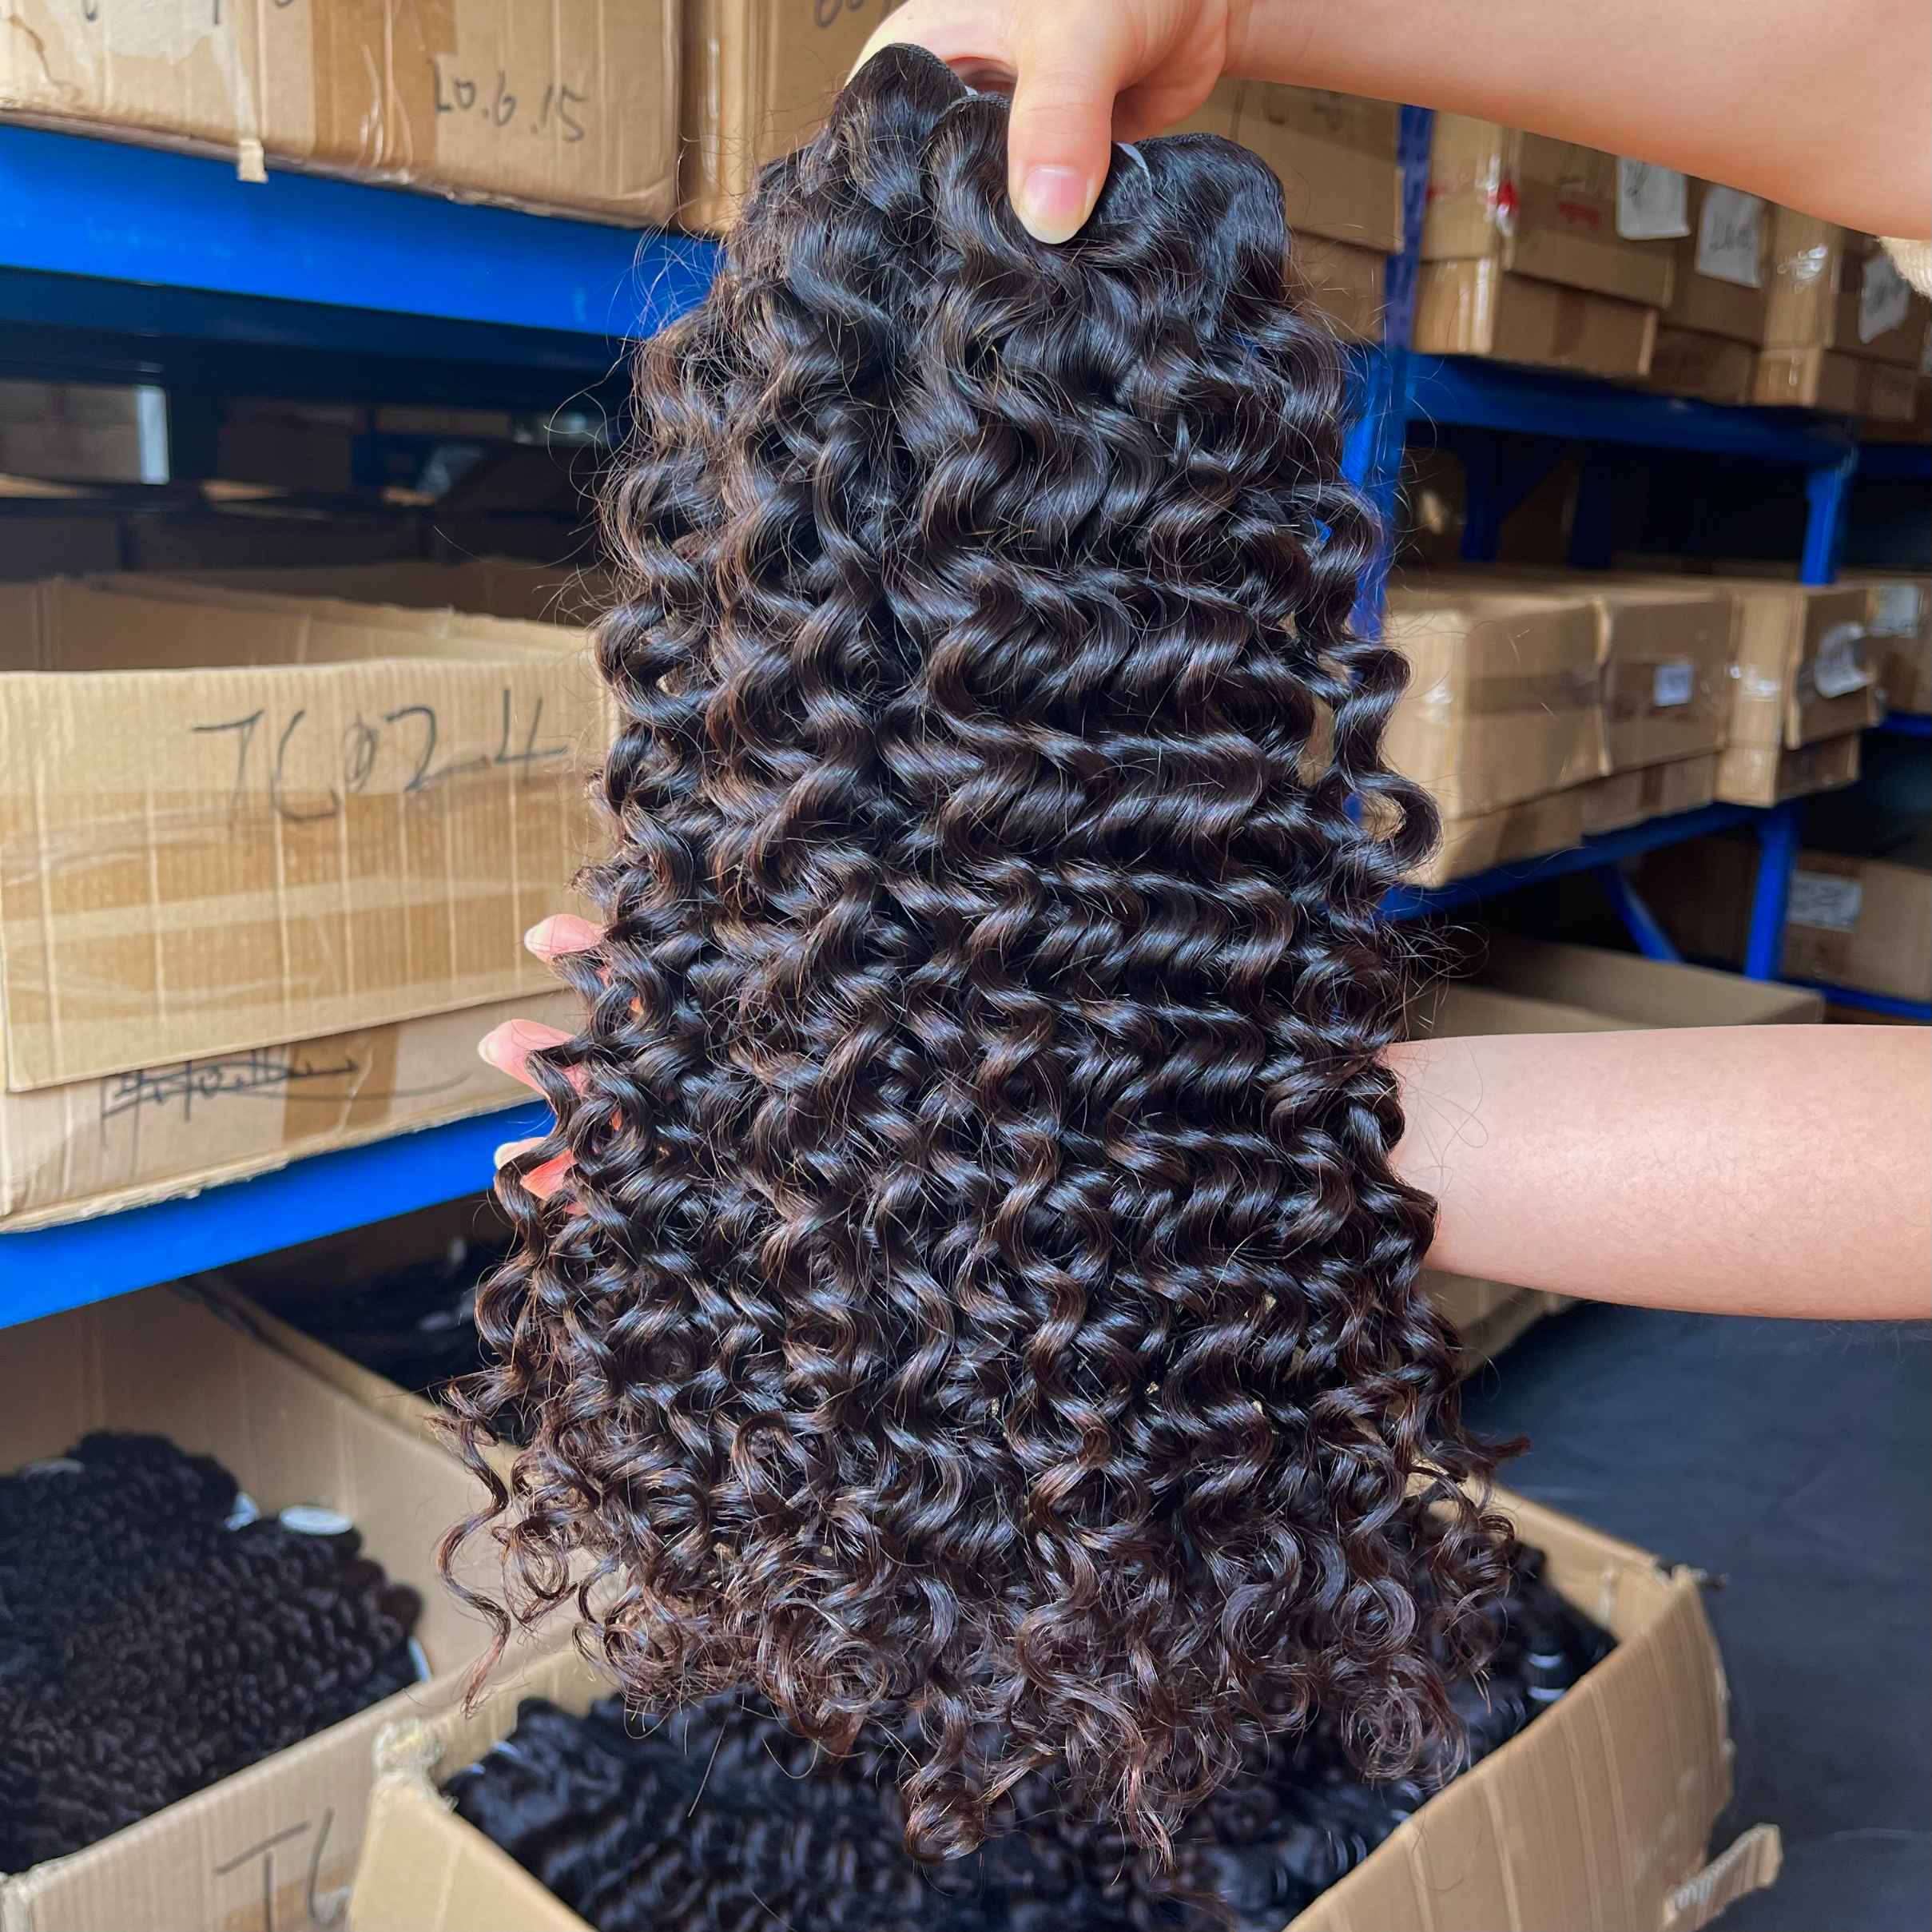 QWB Deep Wave 3 Bundles Deal Brazilian Virgin Hair – Queen Weave Beauty